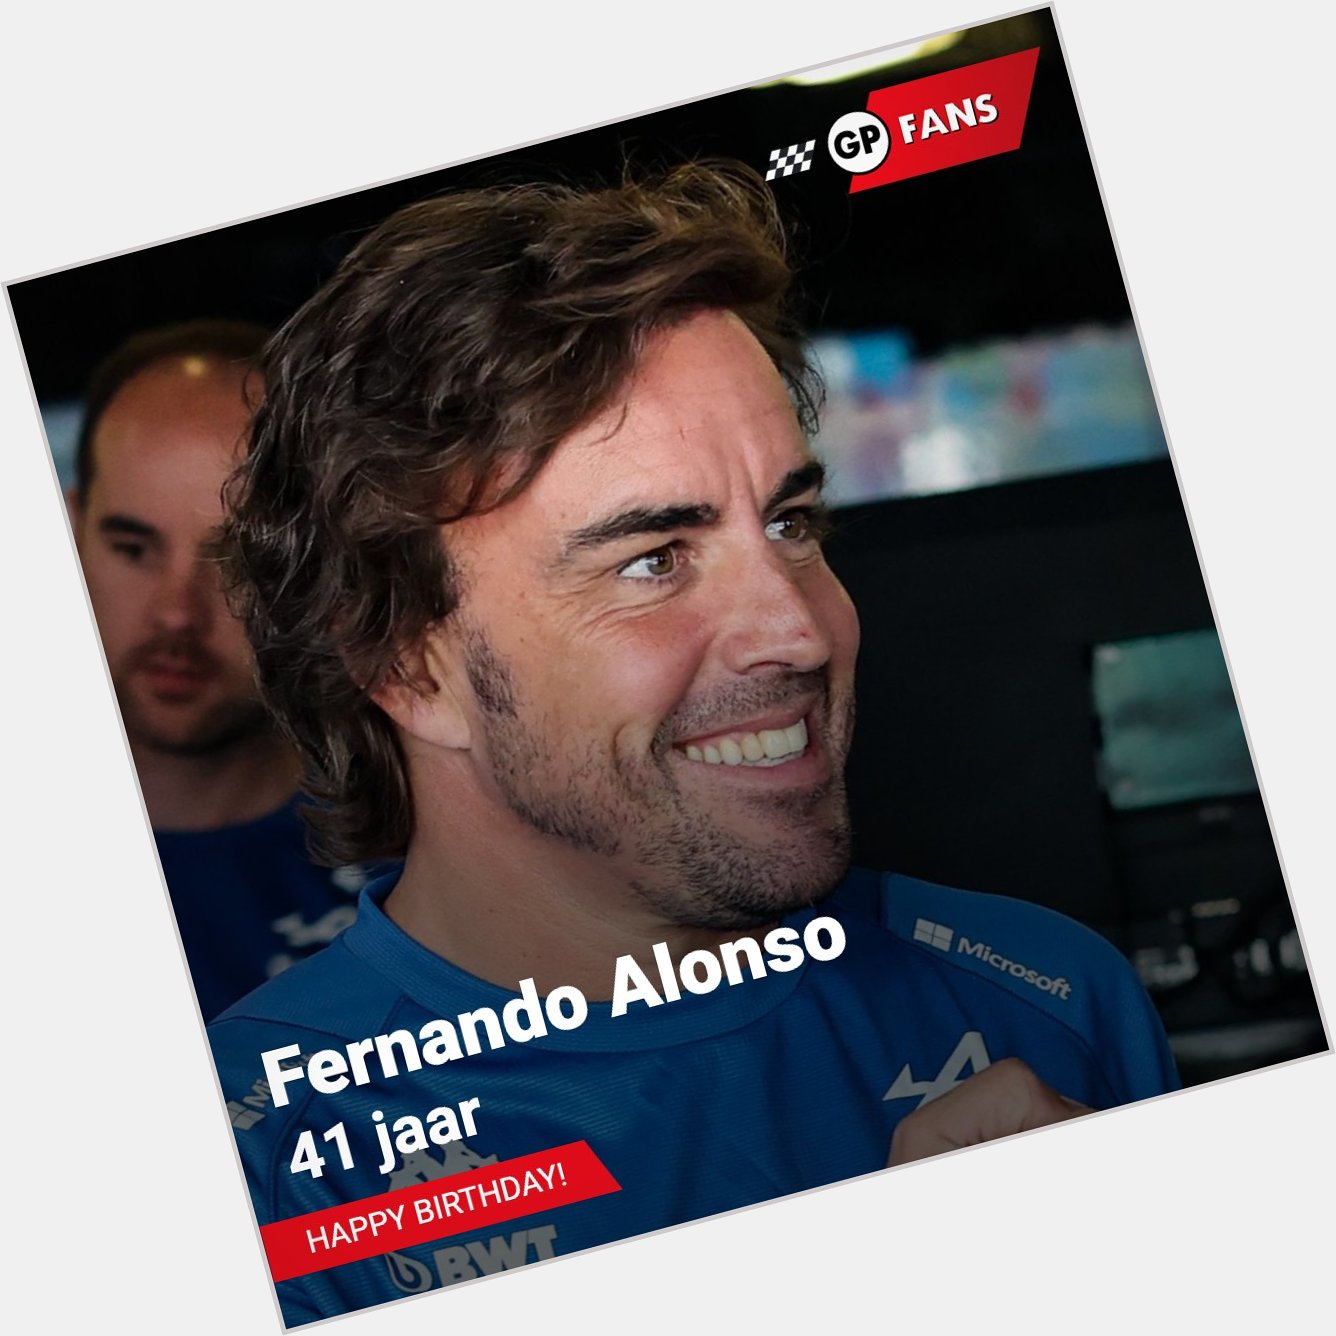 Fernando Alonso viert vandaag zijn 41ste verjaardag. Happy birthday      